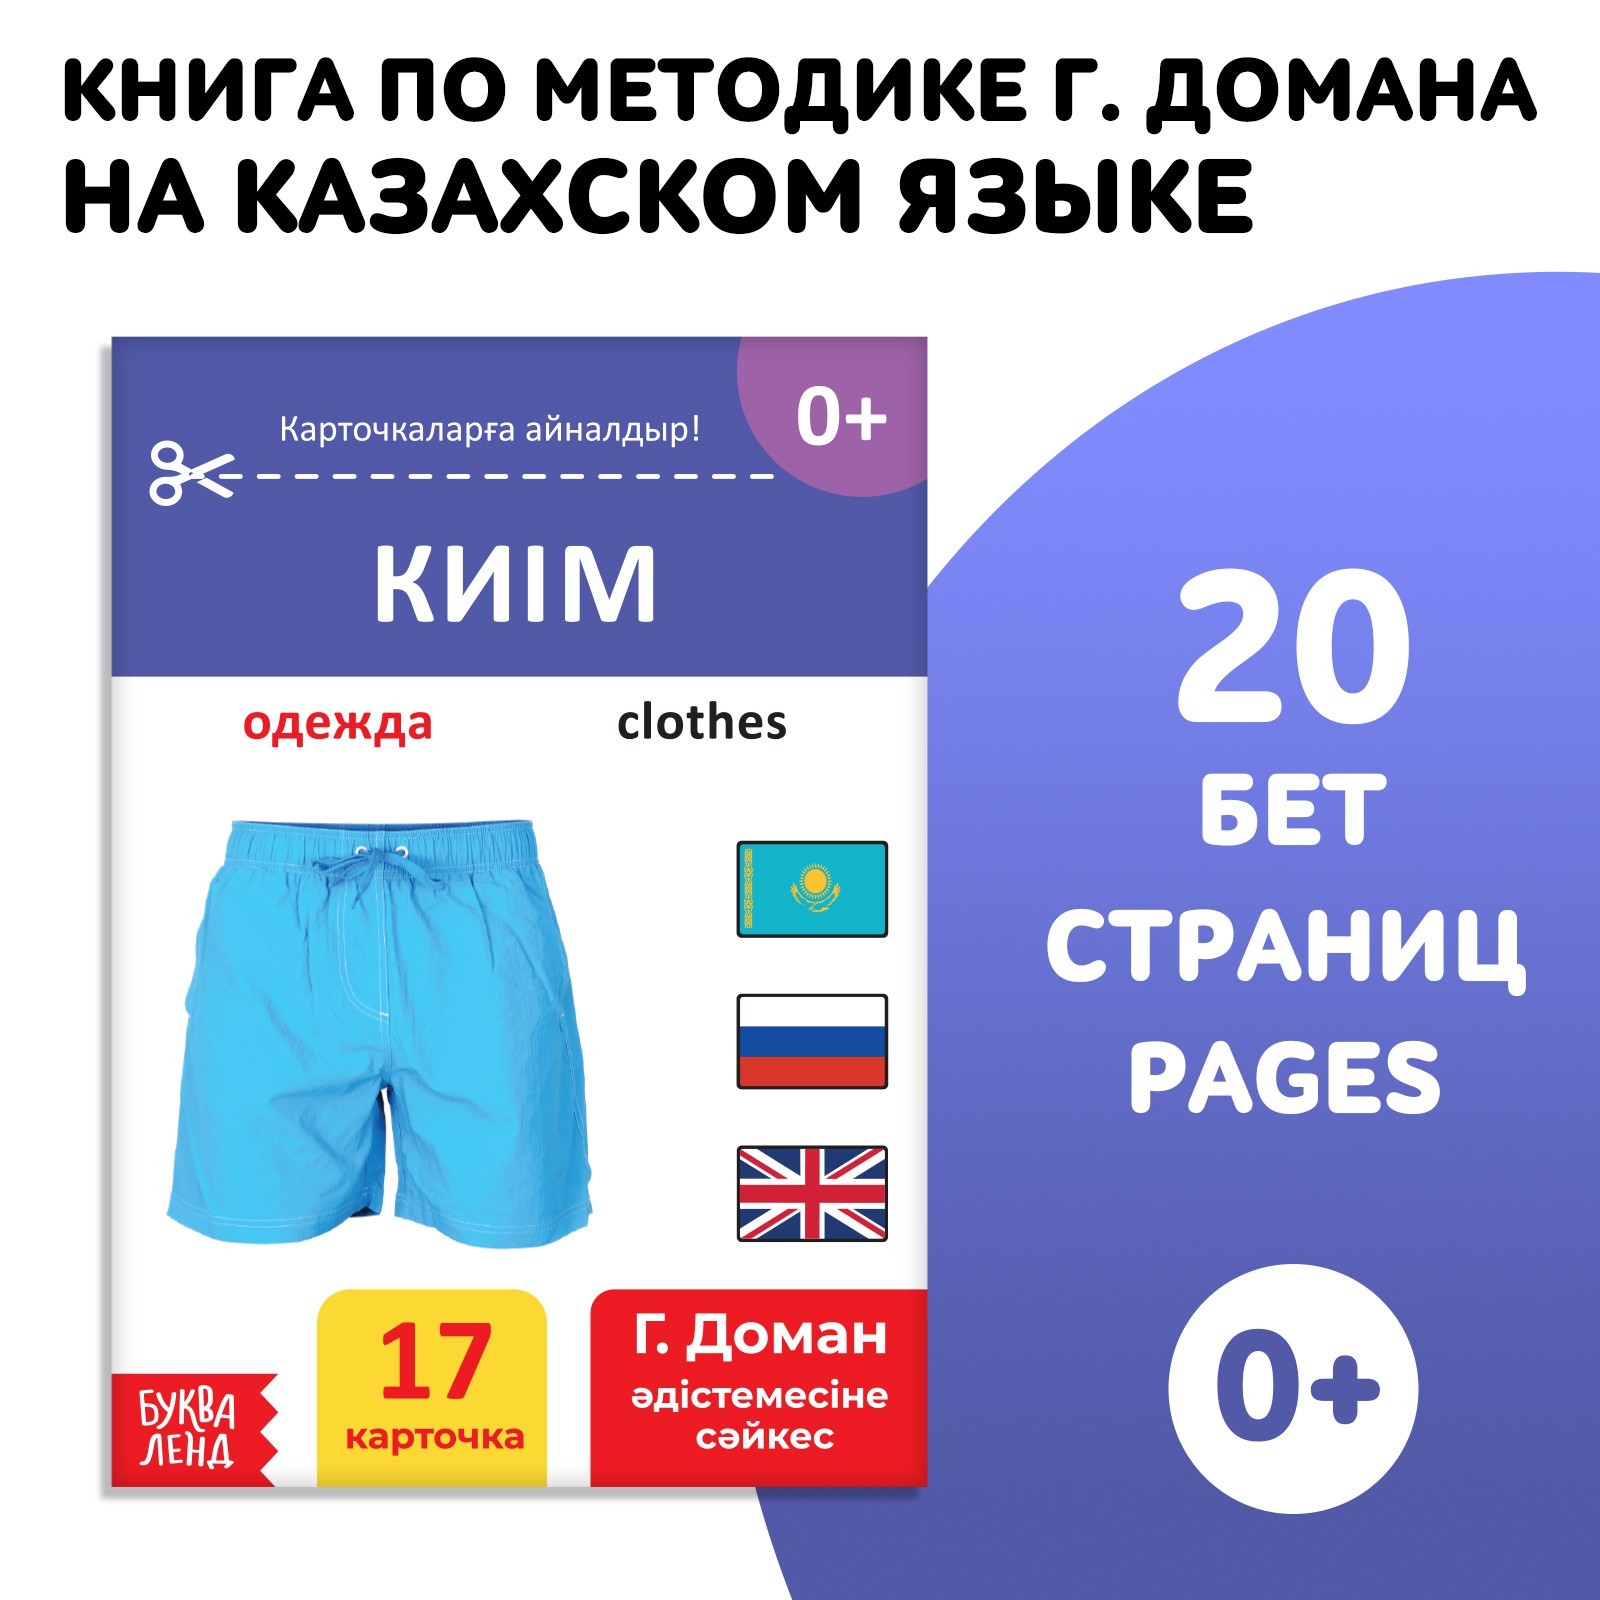 Книга по методике Г. Домана Одежда, на казахском языке 9828795 (Вид 1)